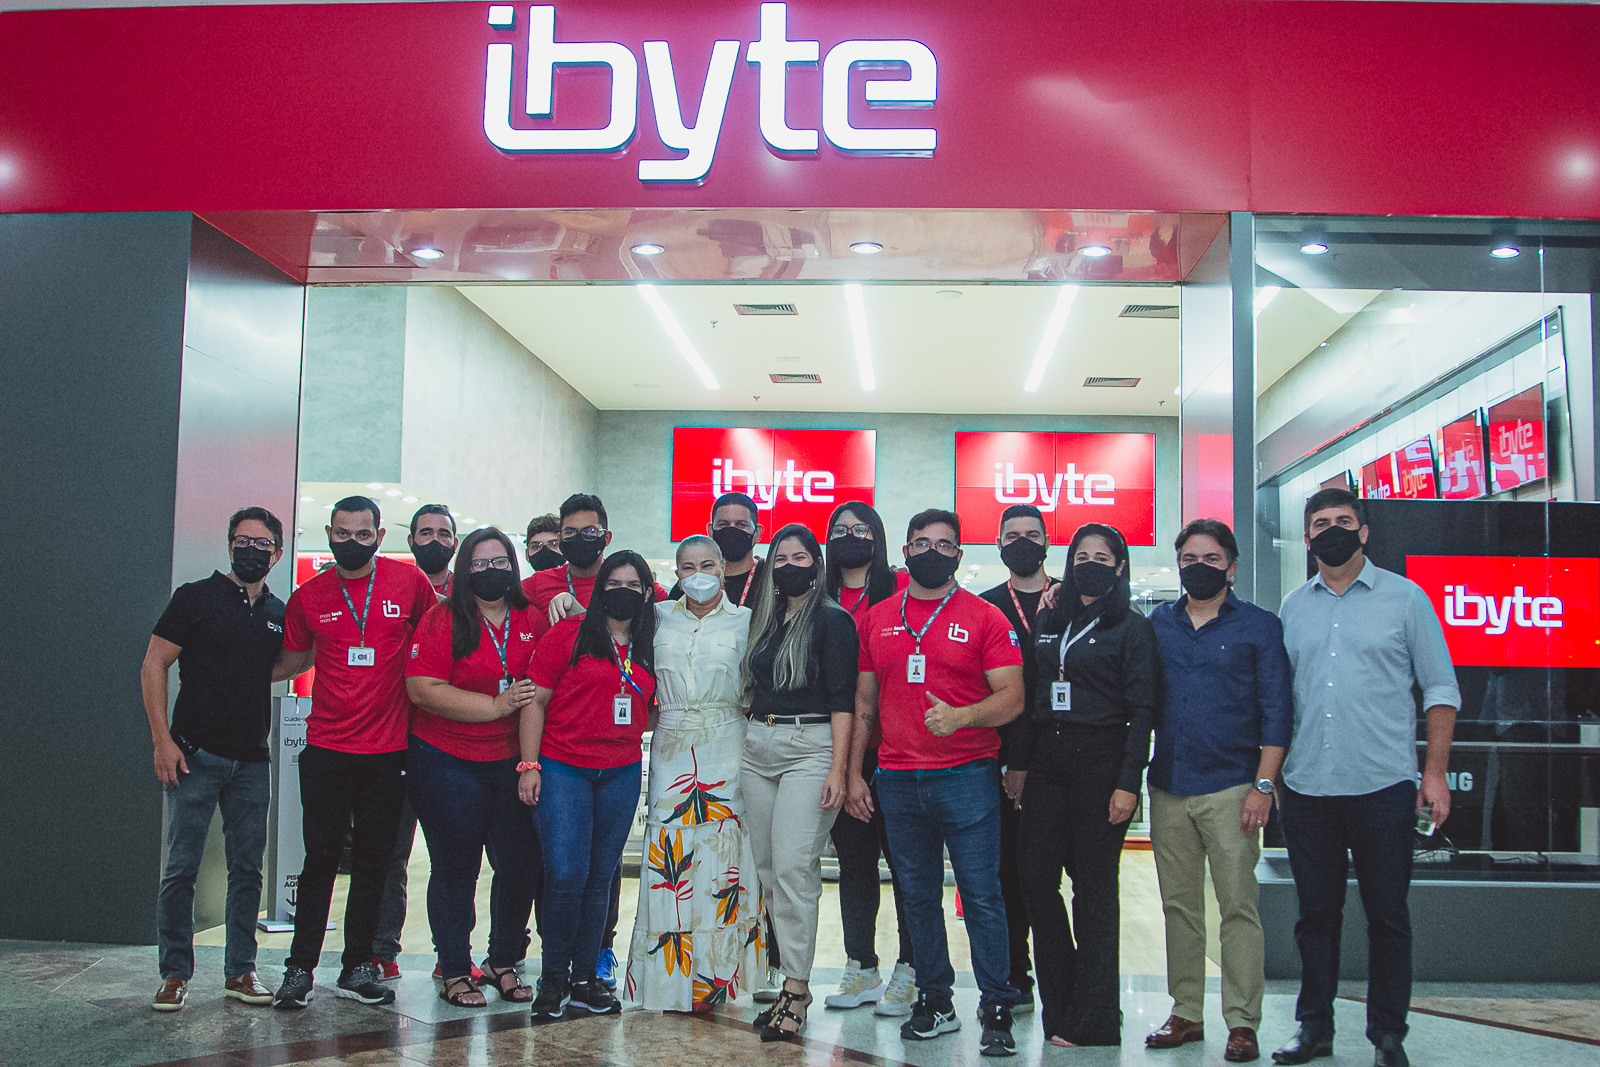 ibyte está com vagas de empregos abertas para pessoas com deficiência